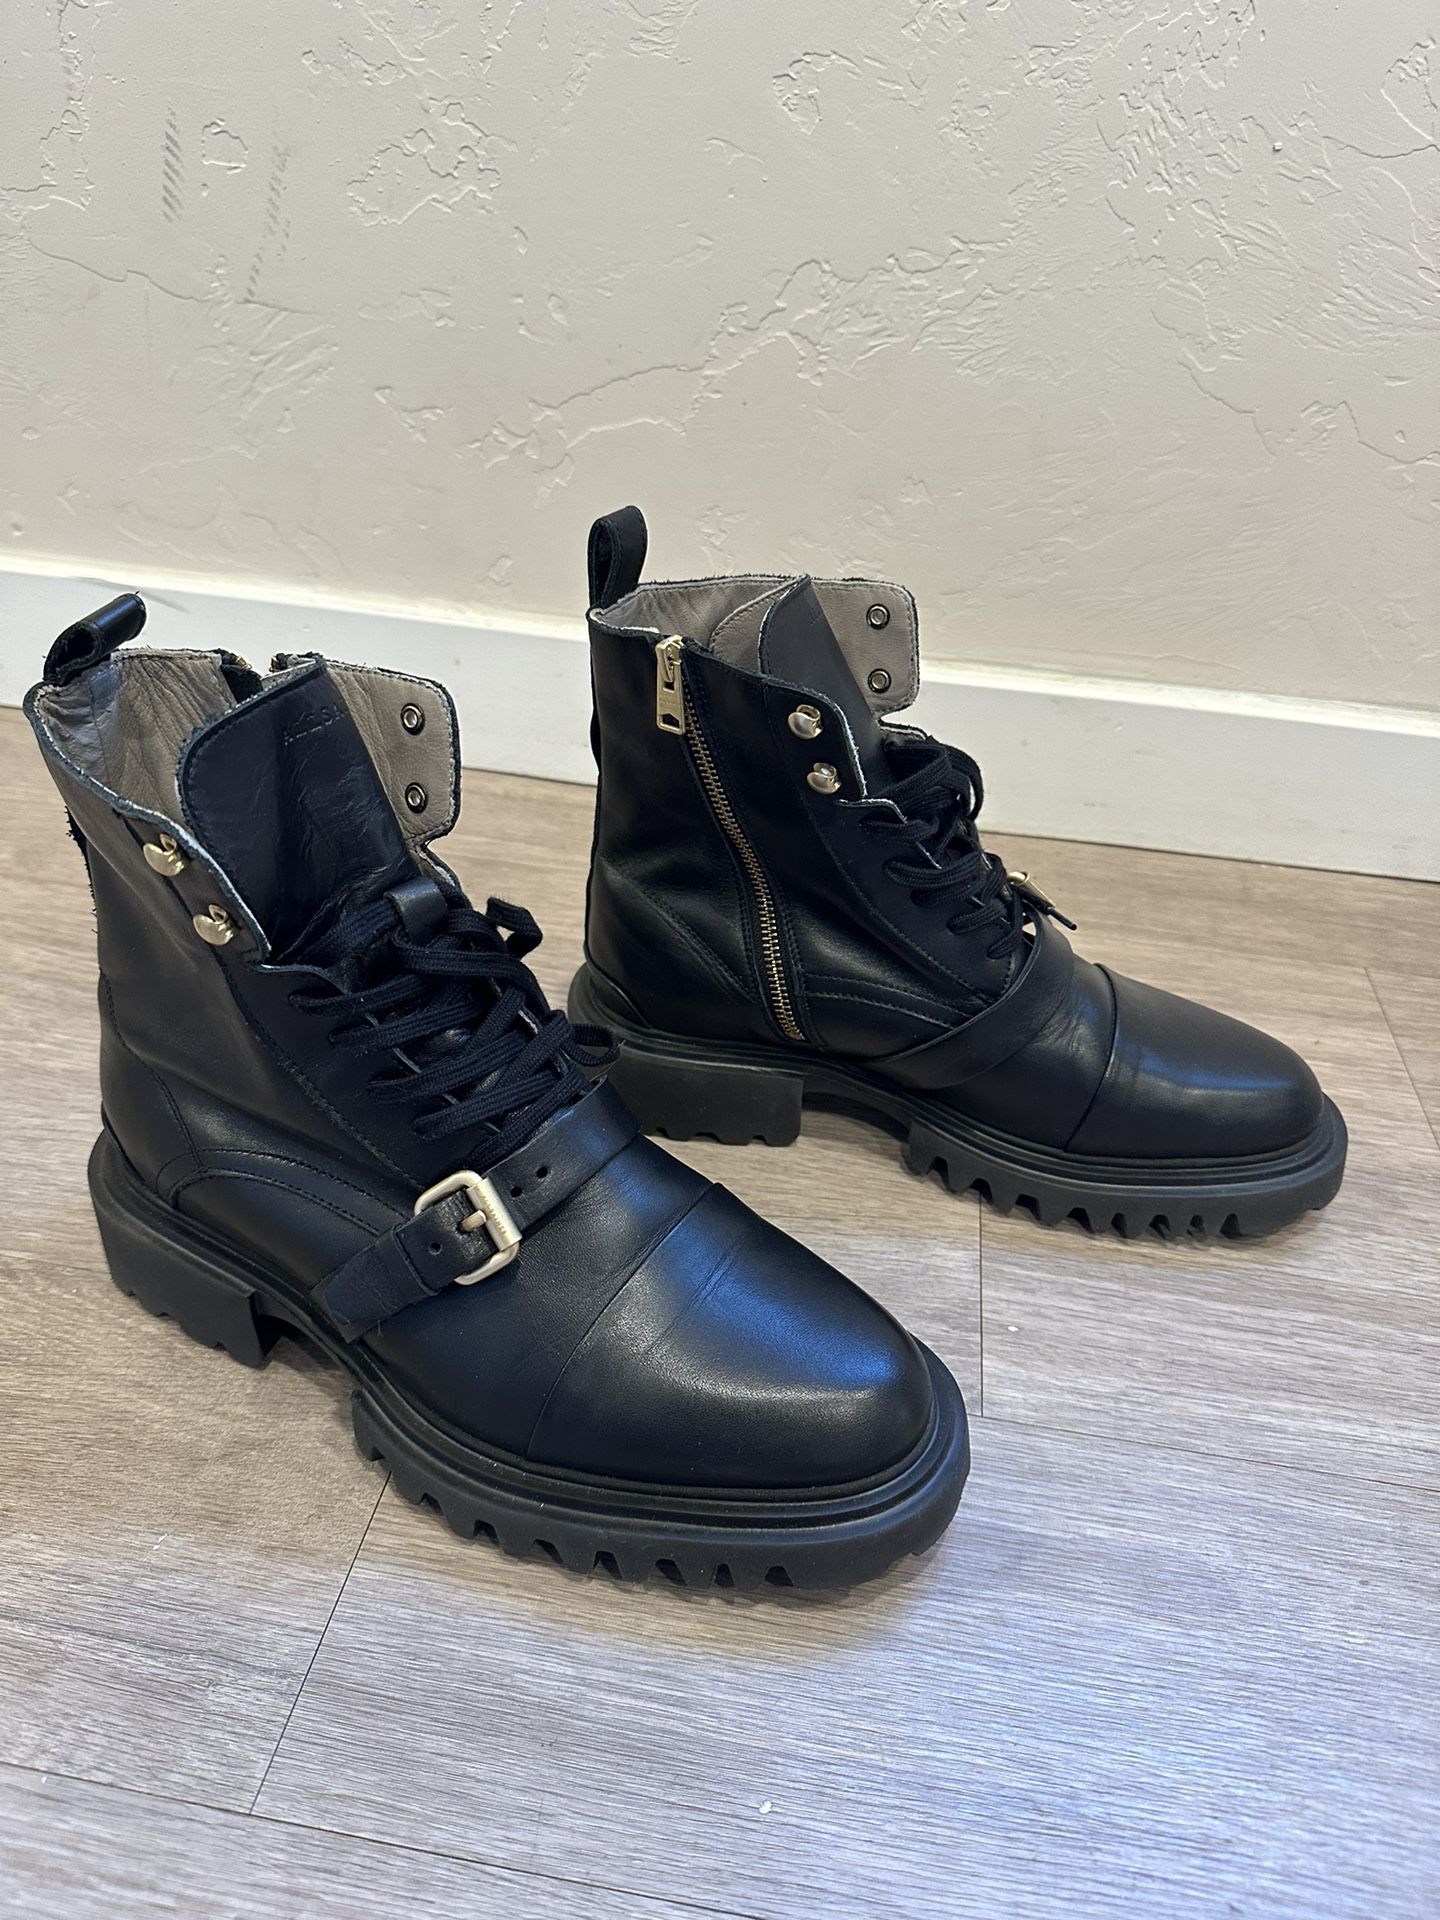 AllSaints Tori Leather Boots Women’s Size 11